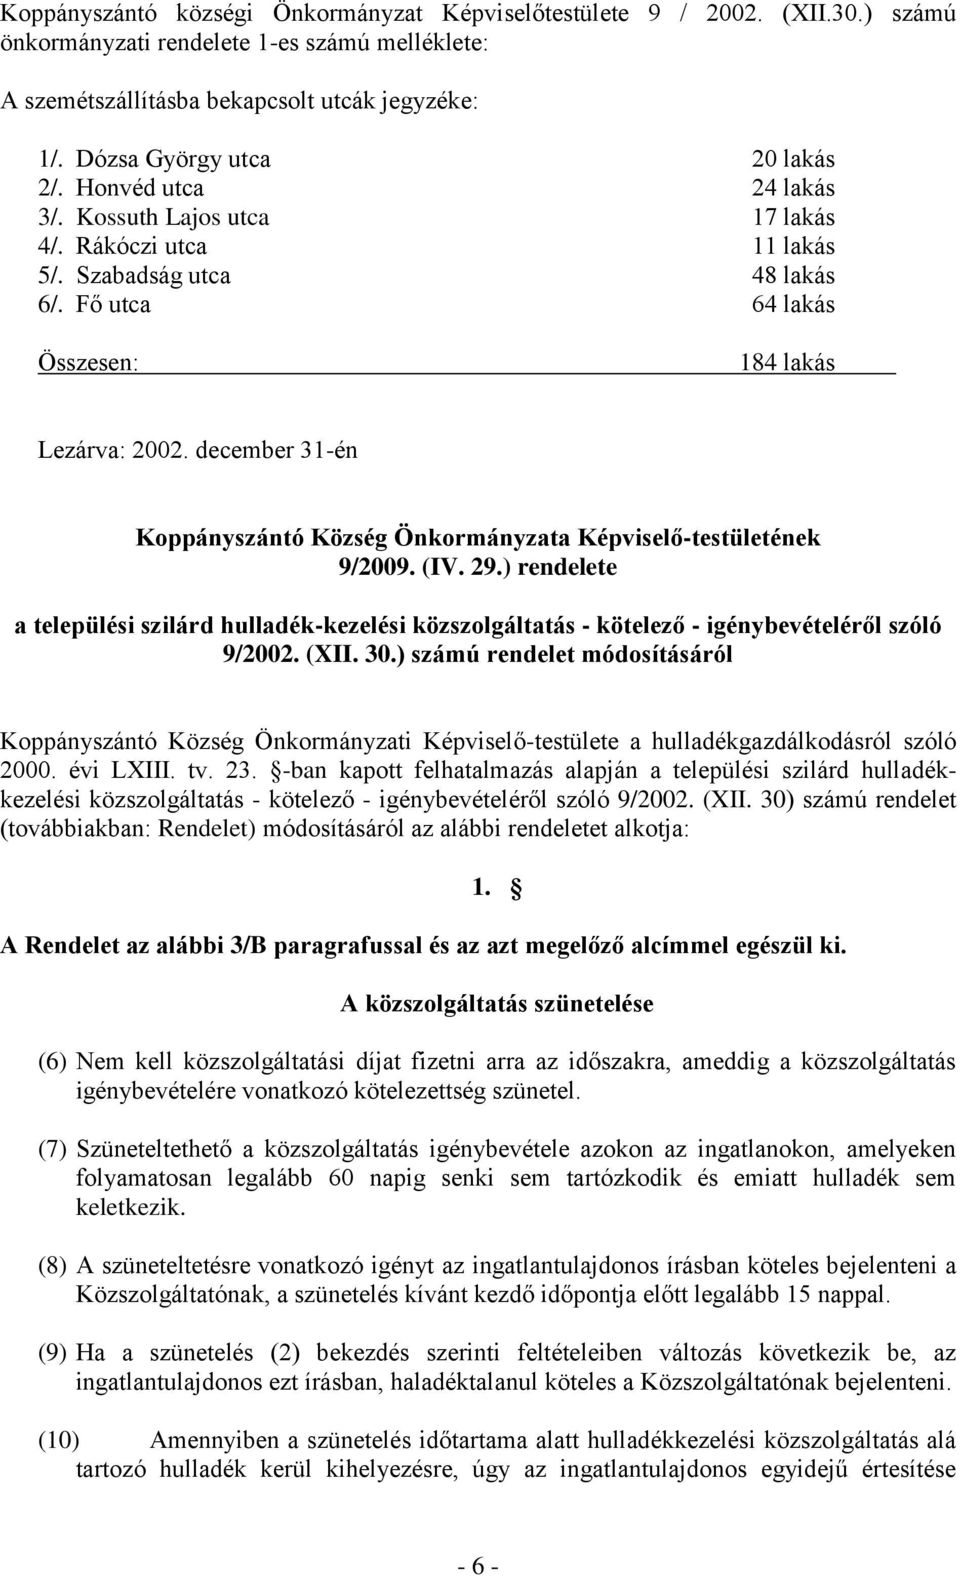 december 31-én Koppányszántó Község Önkormányzata Képviselő-testületének 9/2009. (IV. 29.) rendelete a települési szilárd hulladék-kezelési közszolgáltatás - kötelező - igénybevételéről szóló 9/2002.